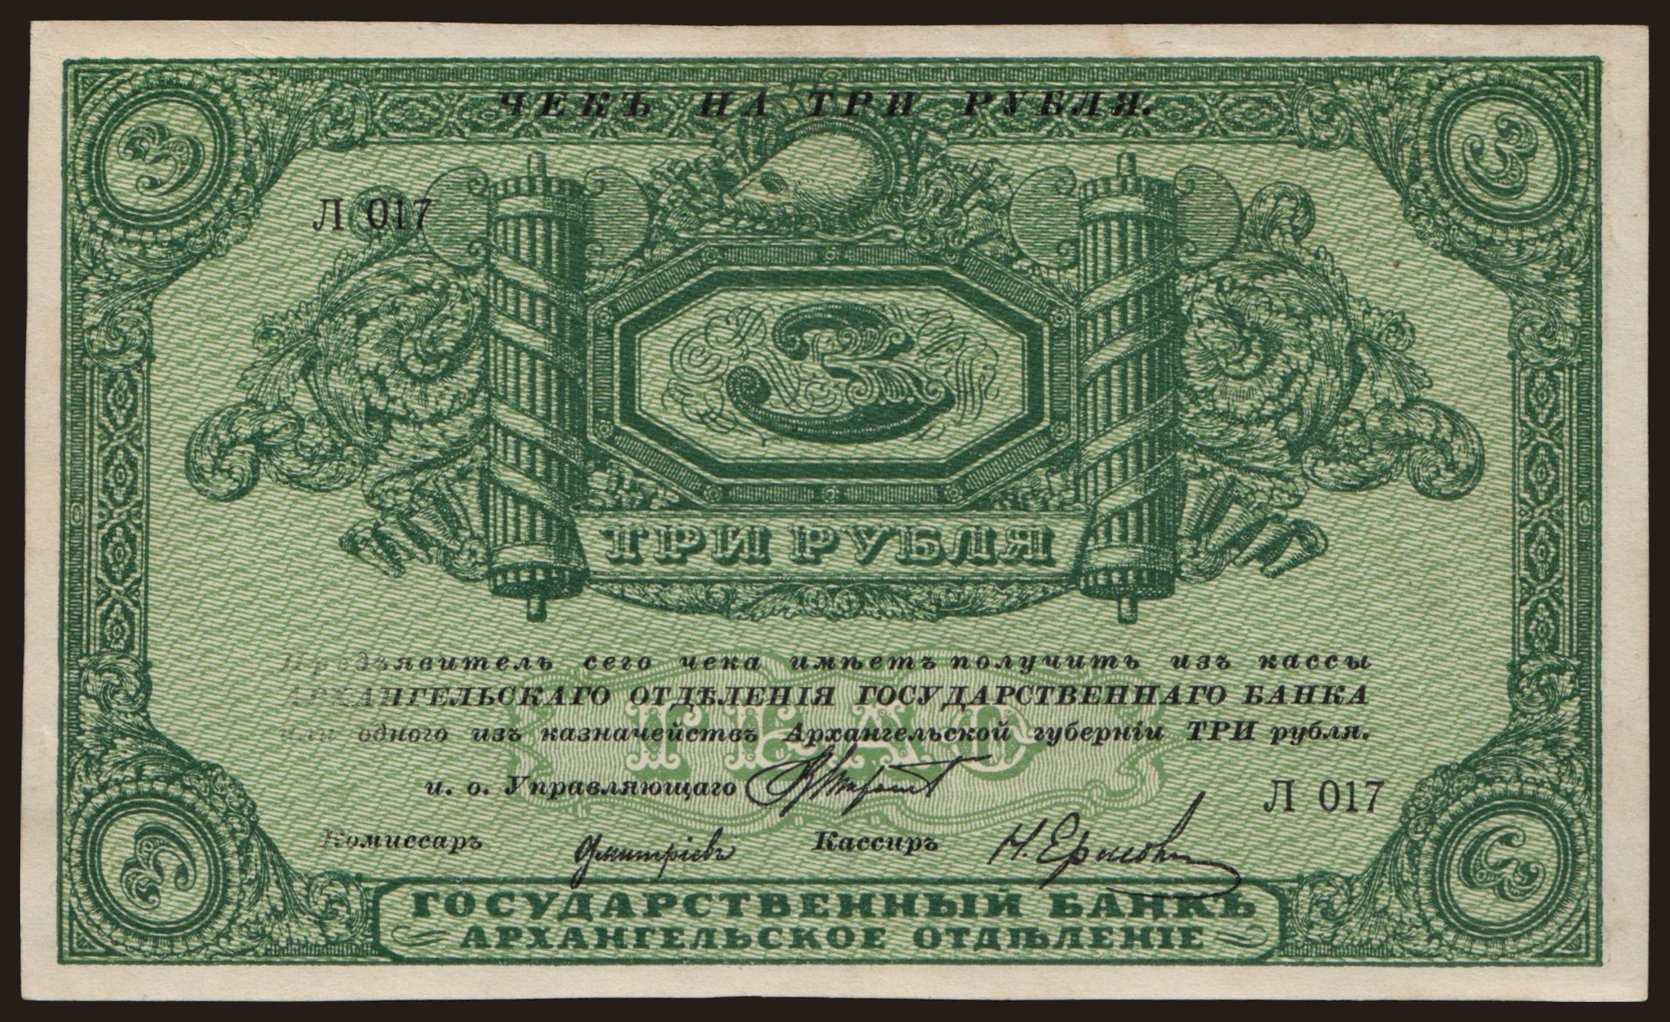 Archangelsk, 3 rubel, 1918